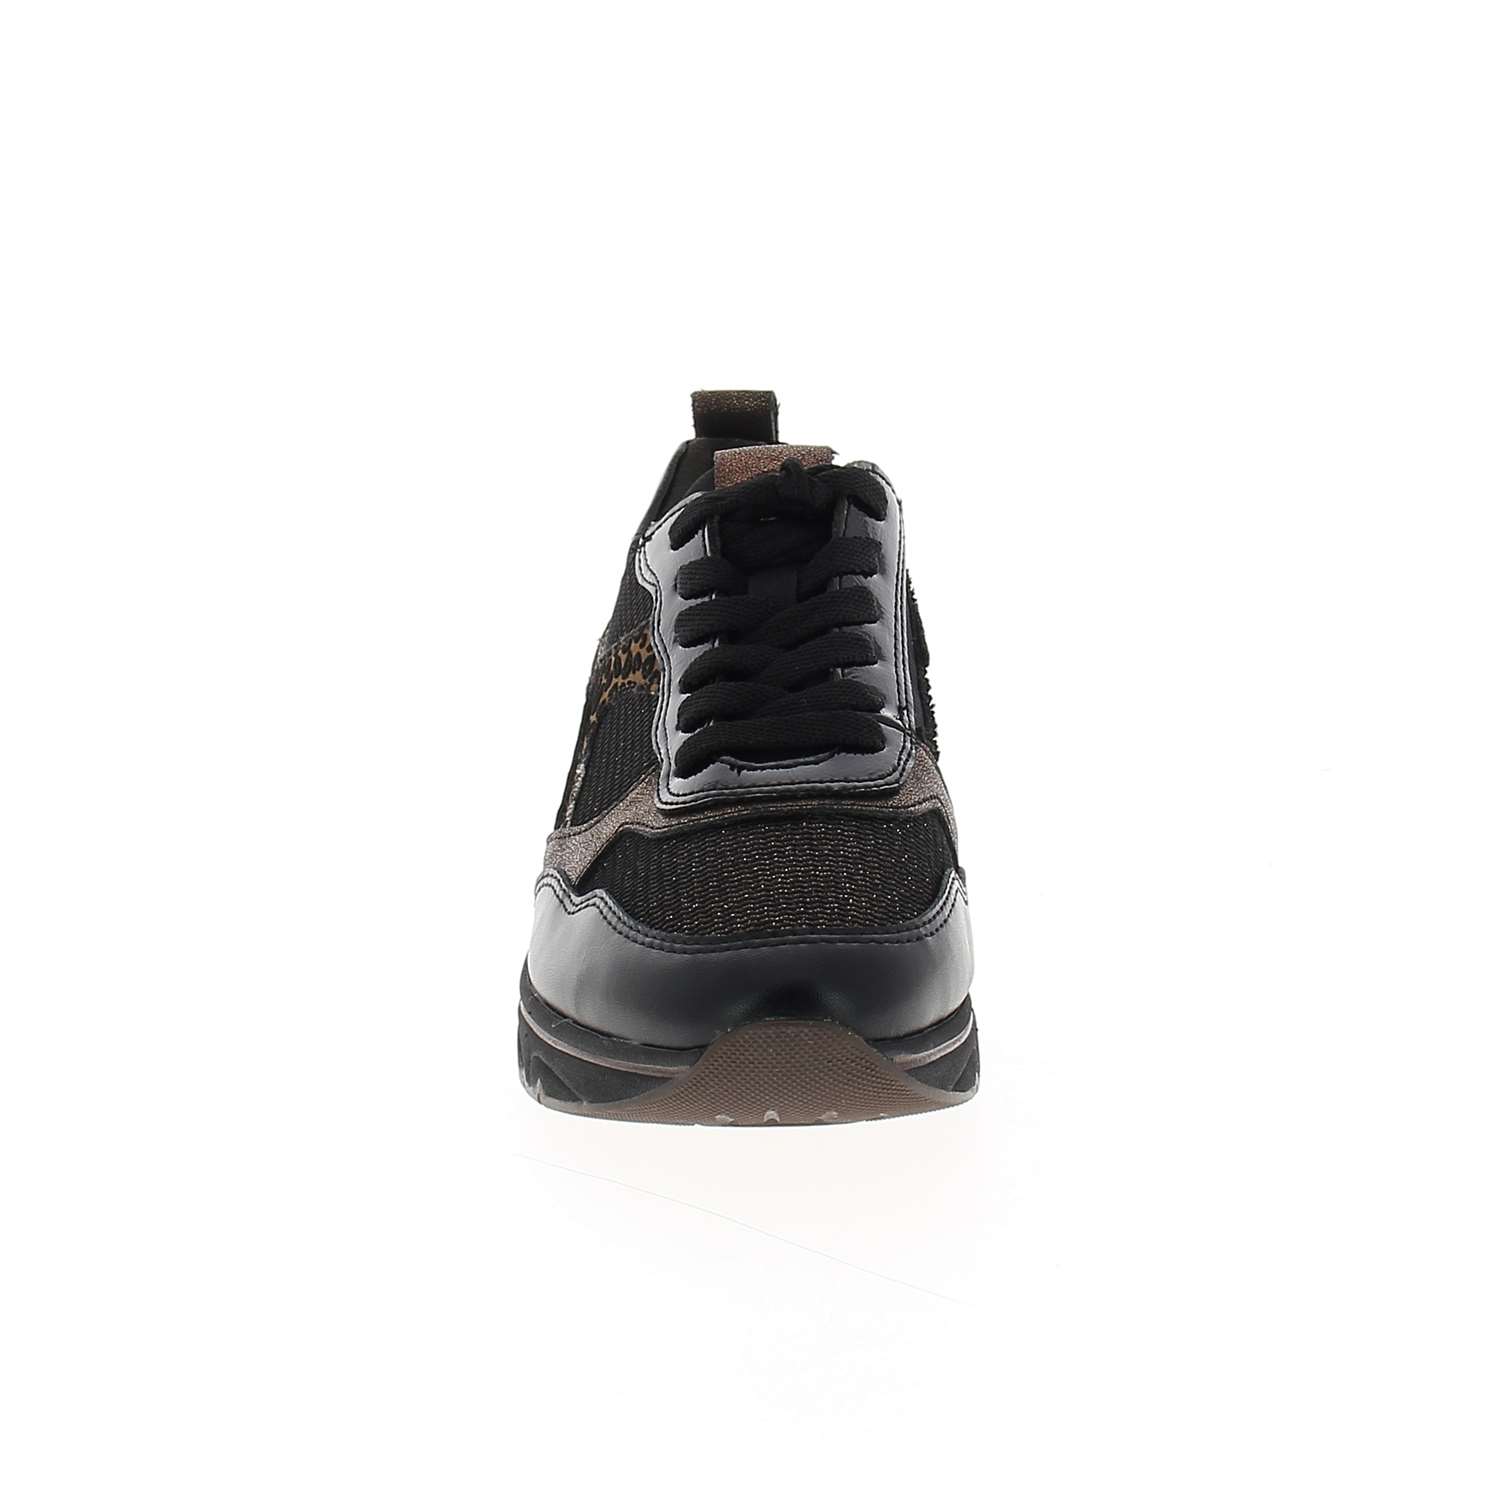 03 - TAFFY - TAMARIS - Chaussures à lacets - Textile